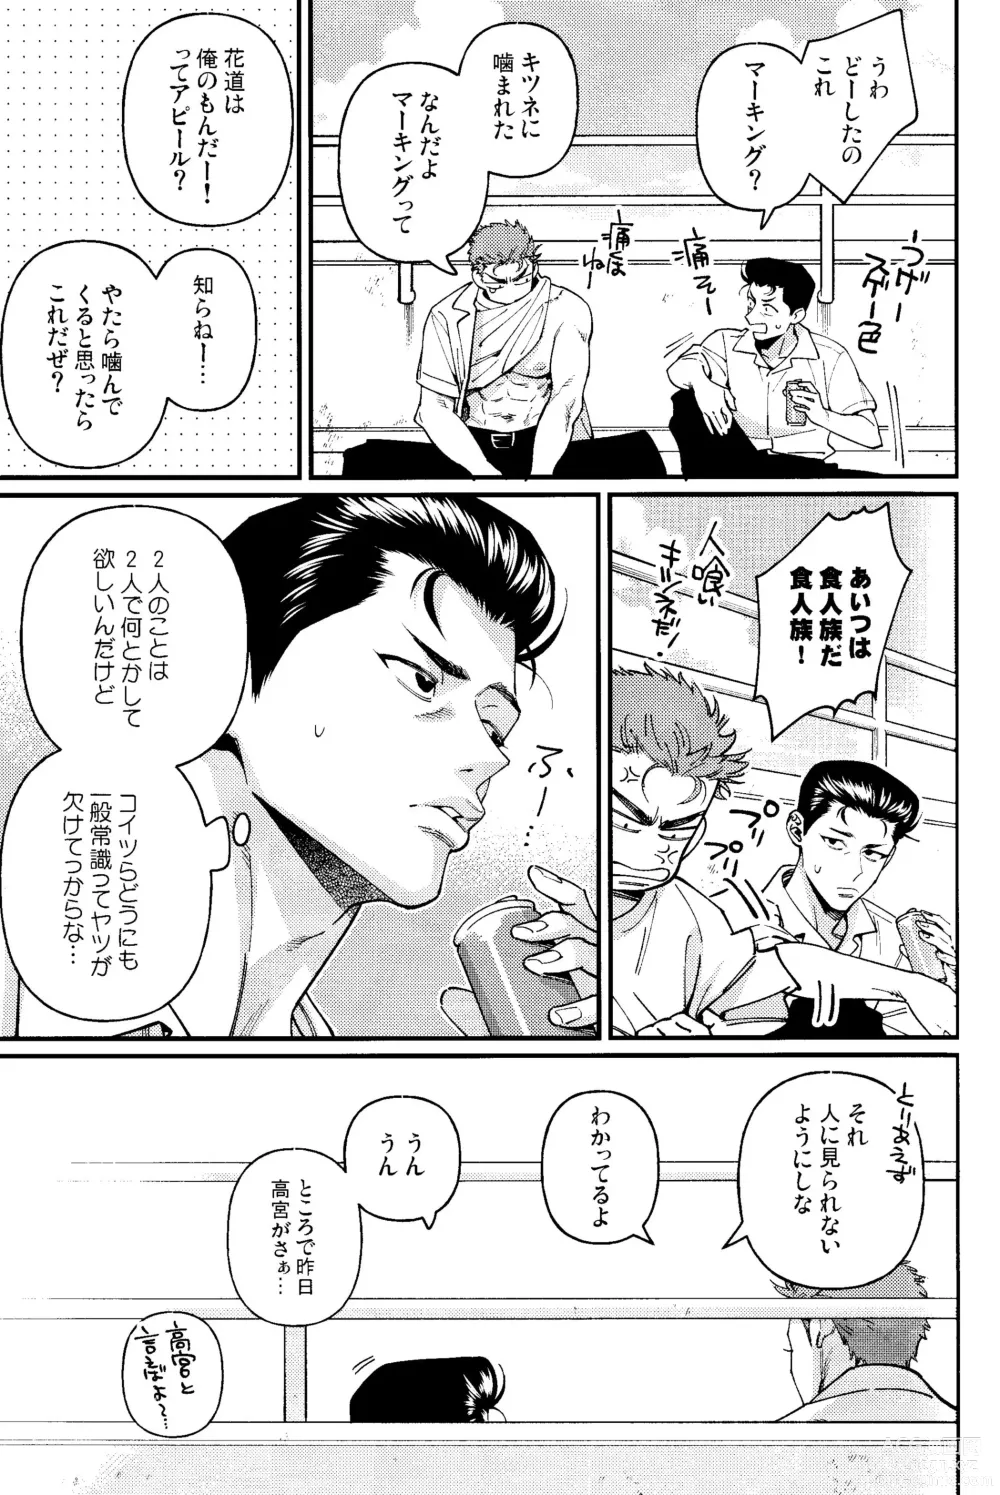 Page 9 of doujinshi Rukawa  Kaede wa Marking ga Shitai